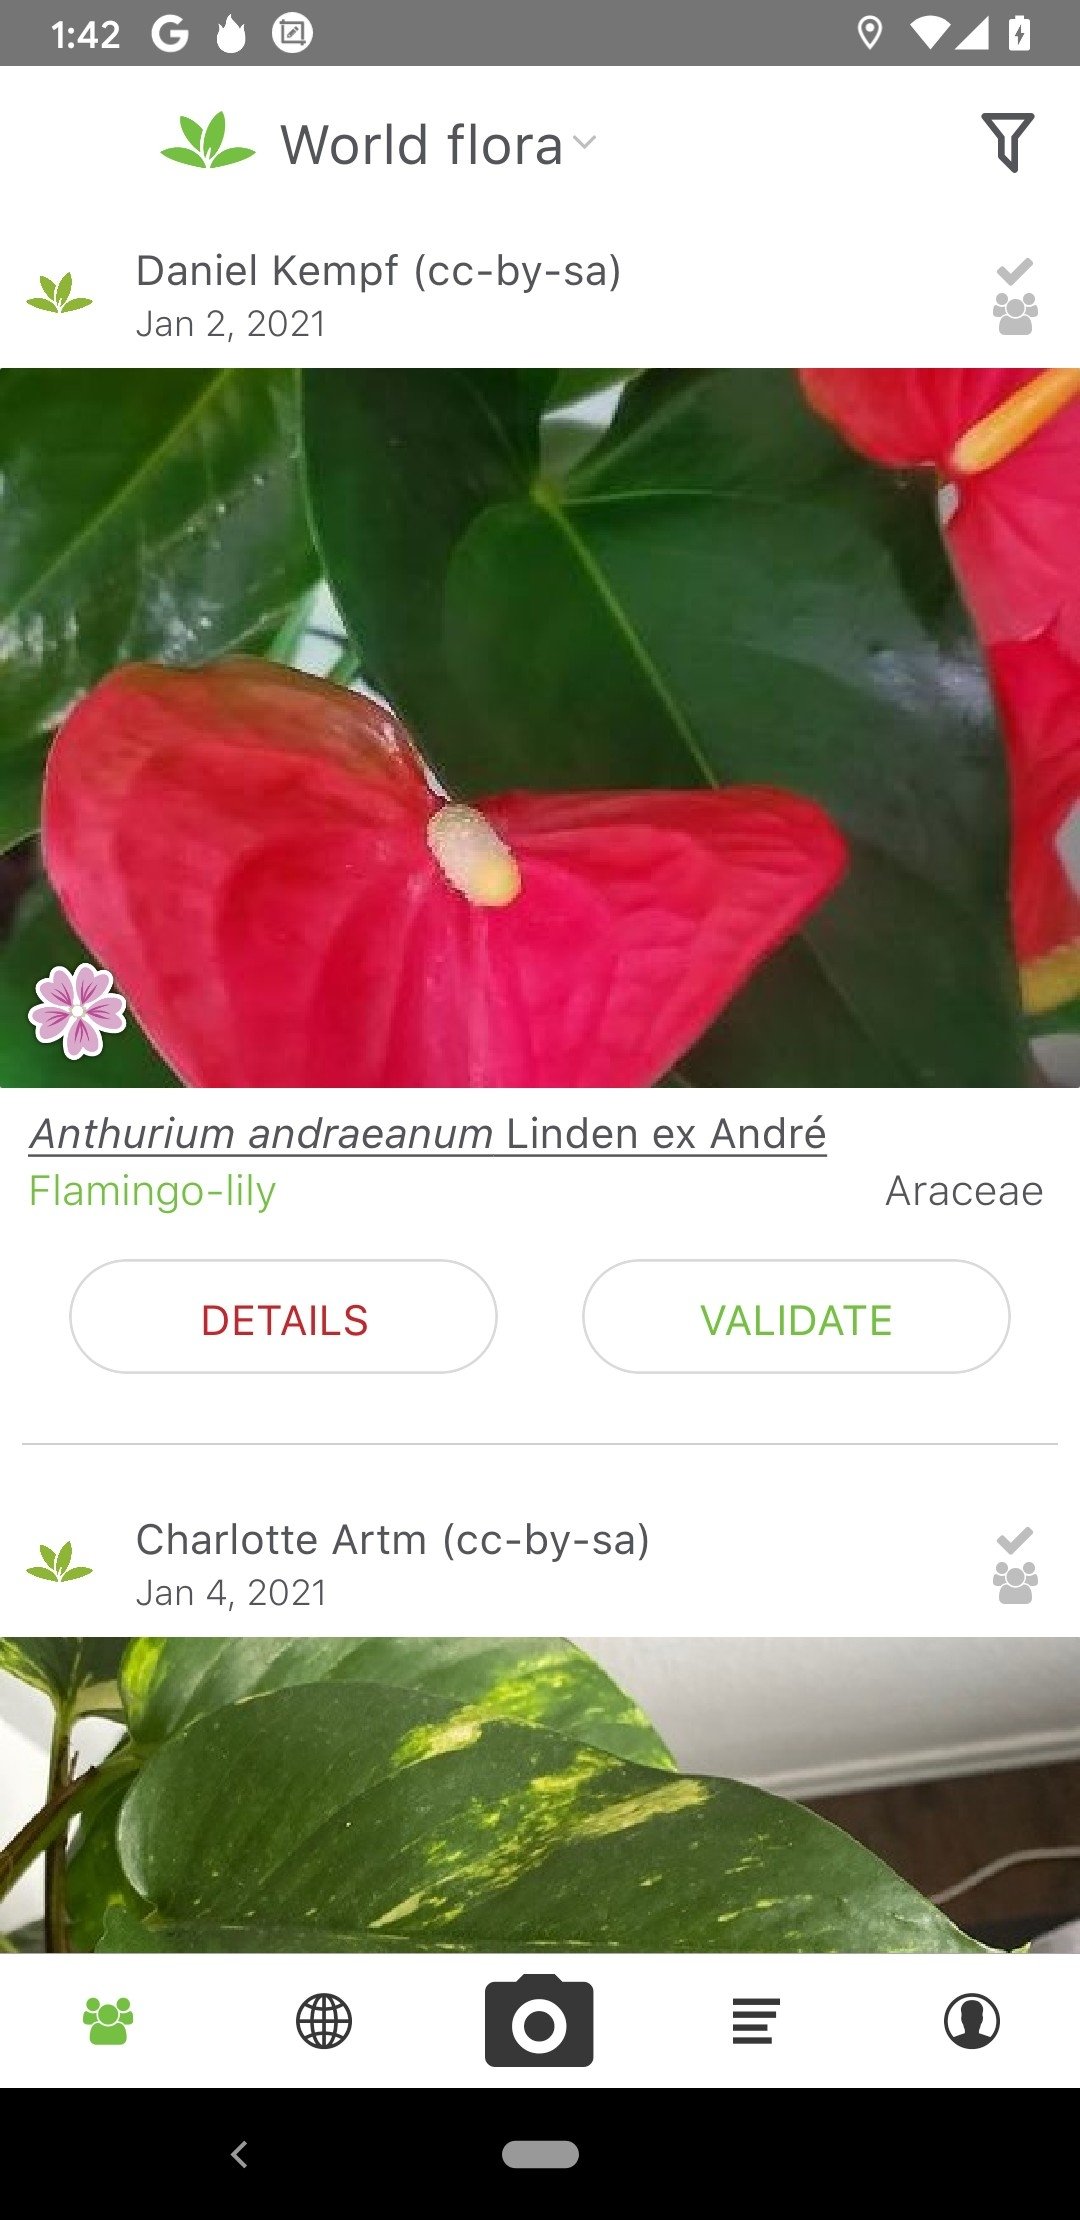 plantnet 3.4.4 - download für android apk kostenlos